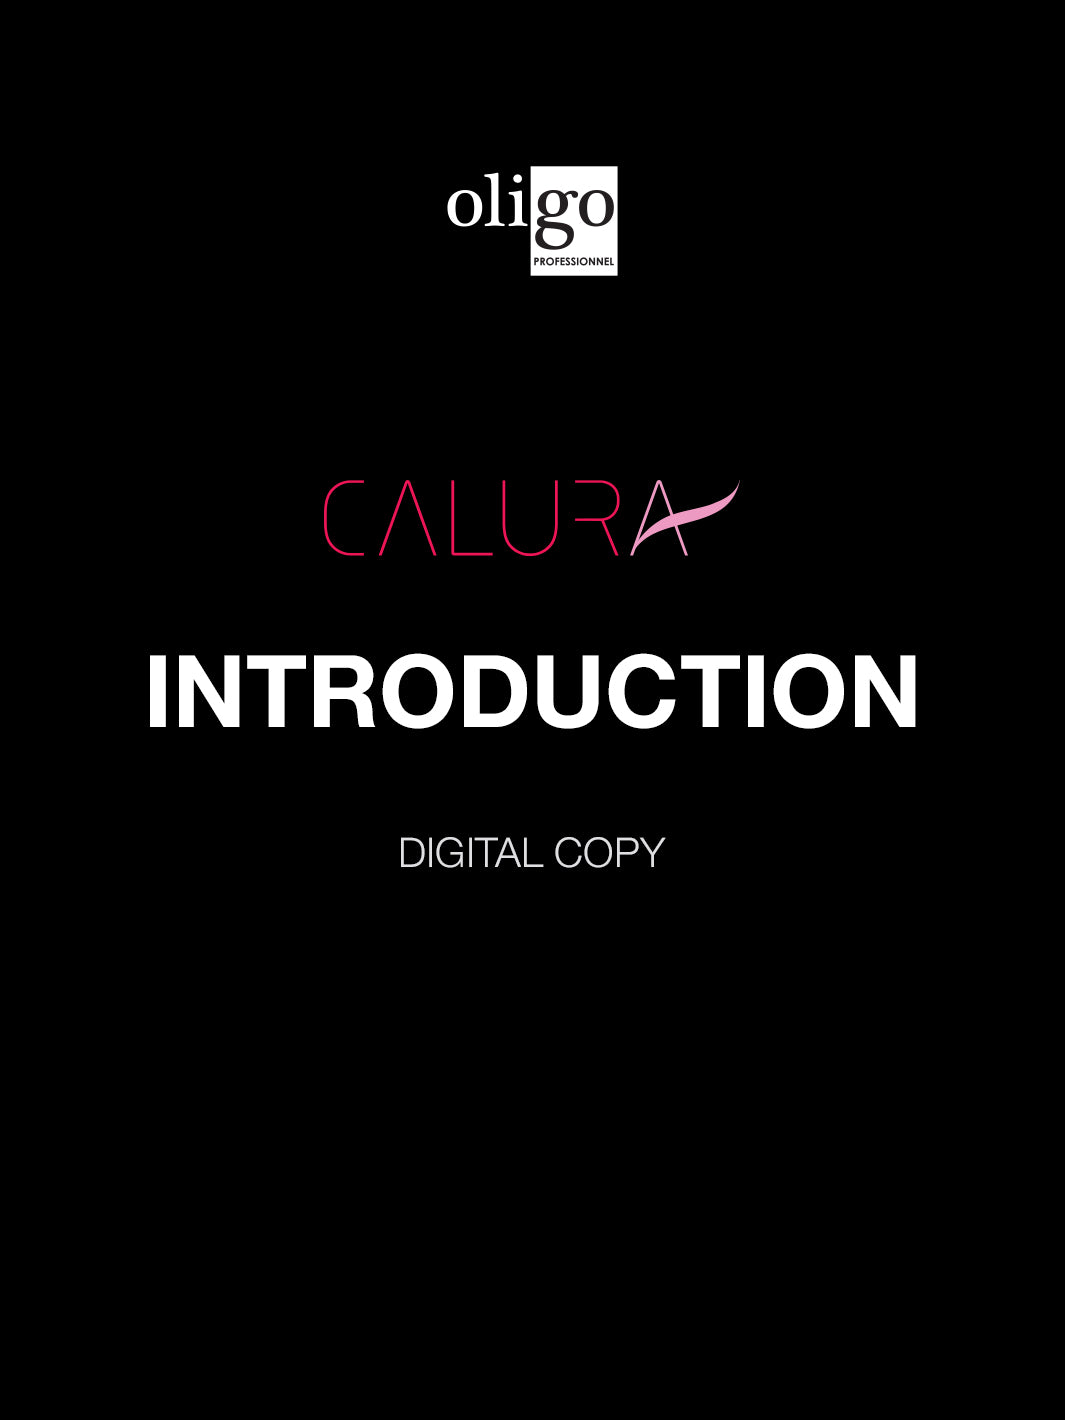 Oligo Calura Introduction (digital copy)